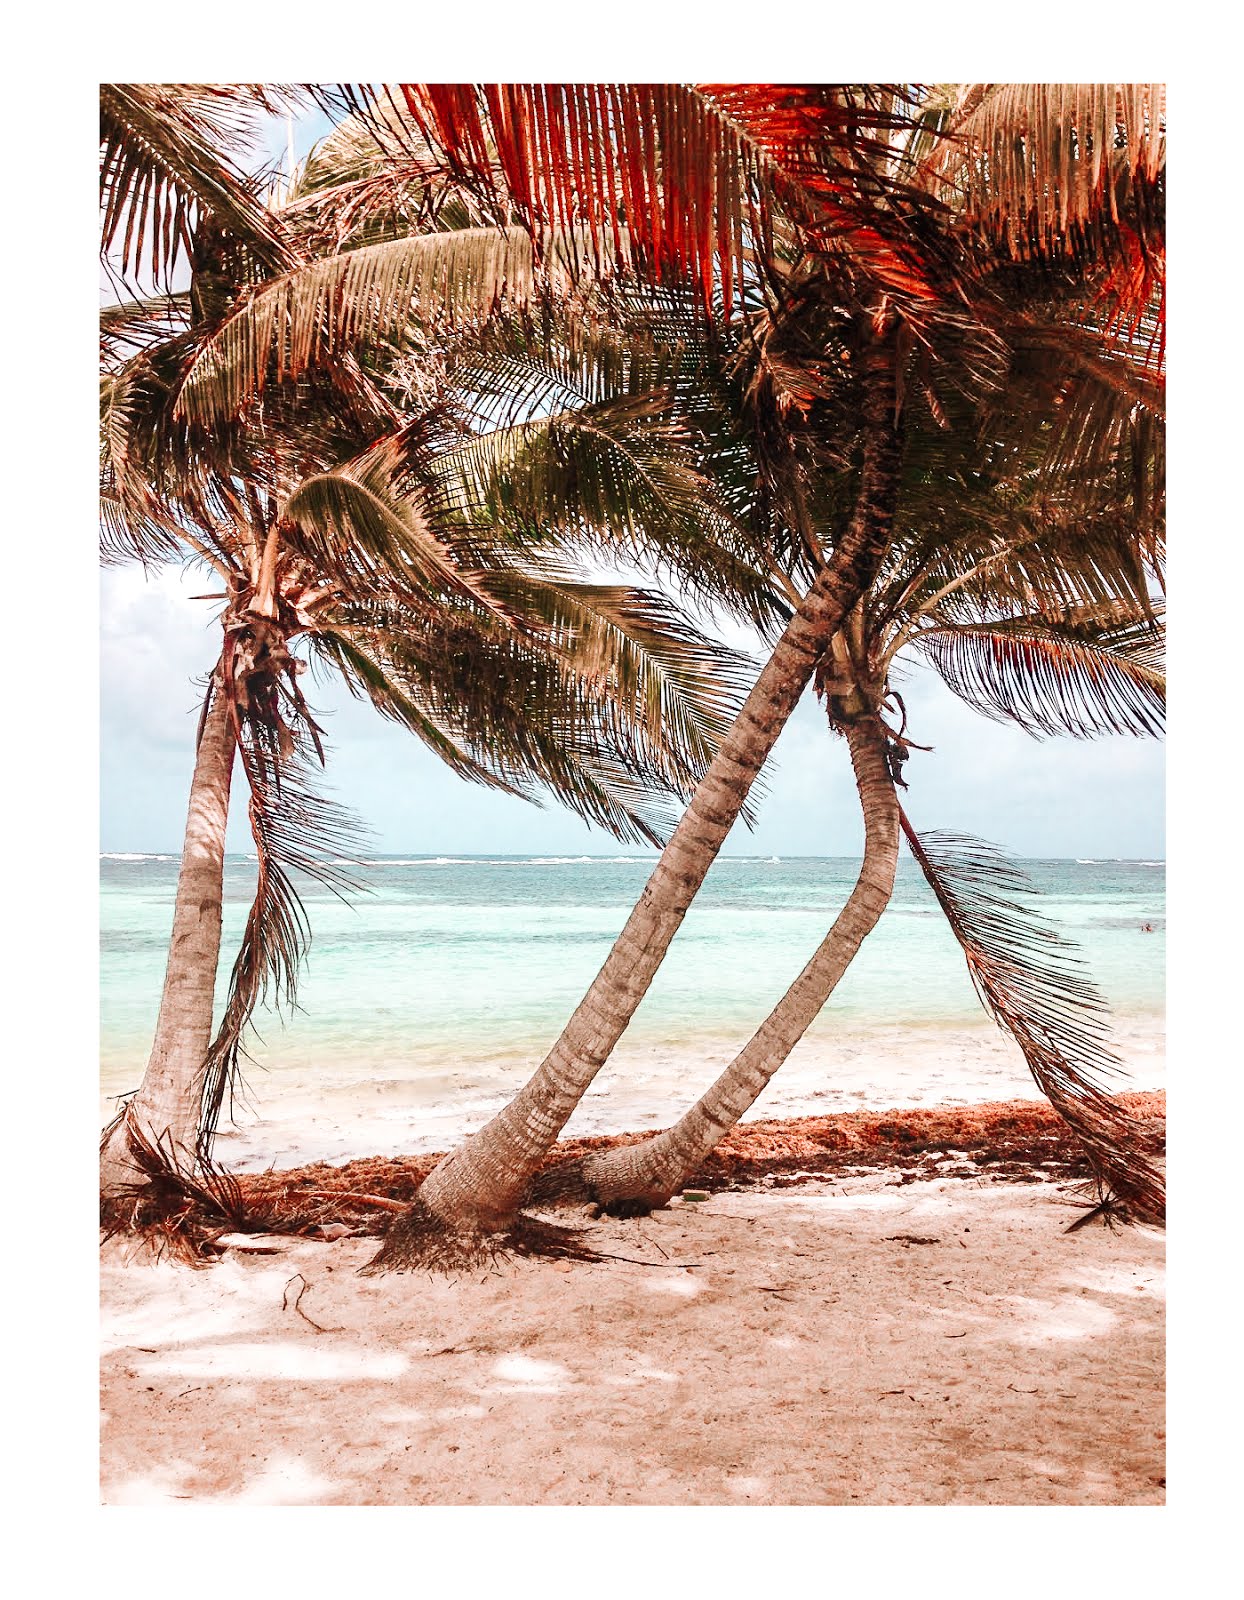 sable fin et palmiers au premier plan et nuances de bleu dans l'eau au second plan sur la plage cap chevalier en martinique